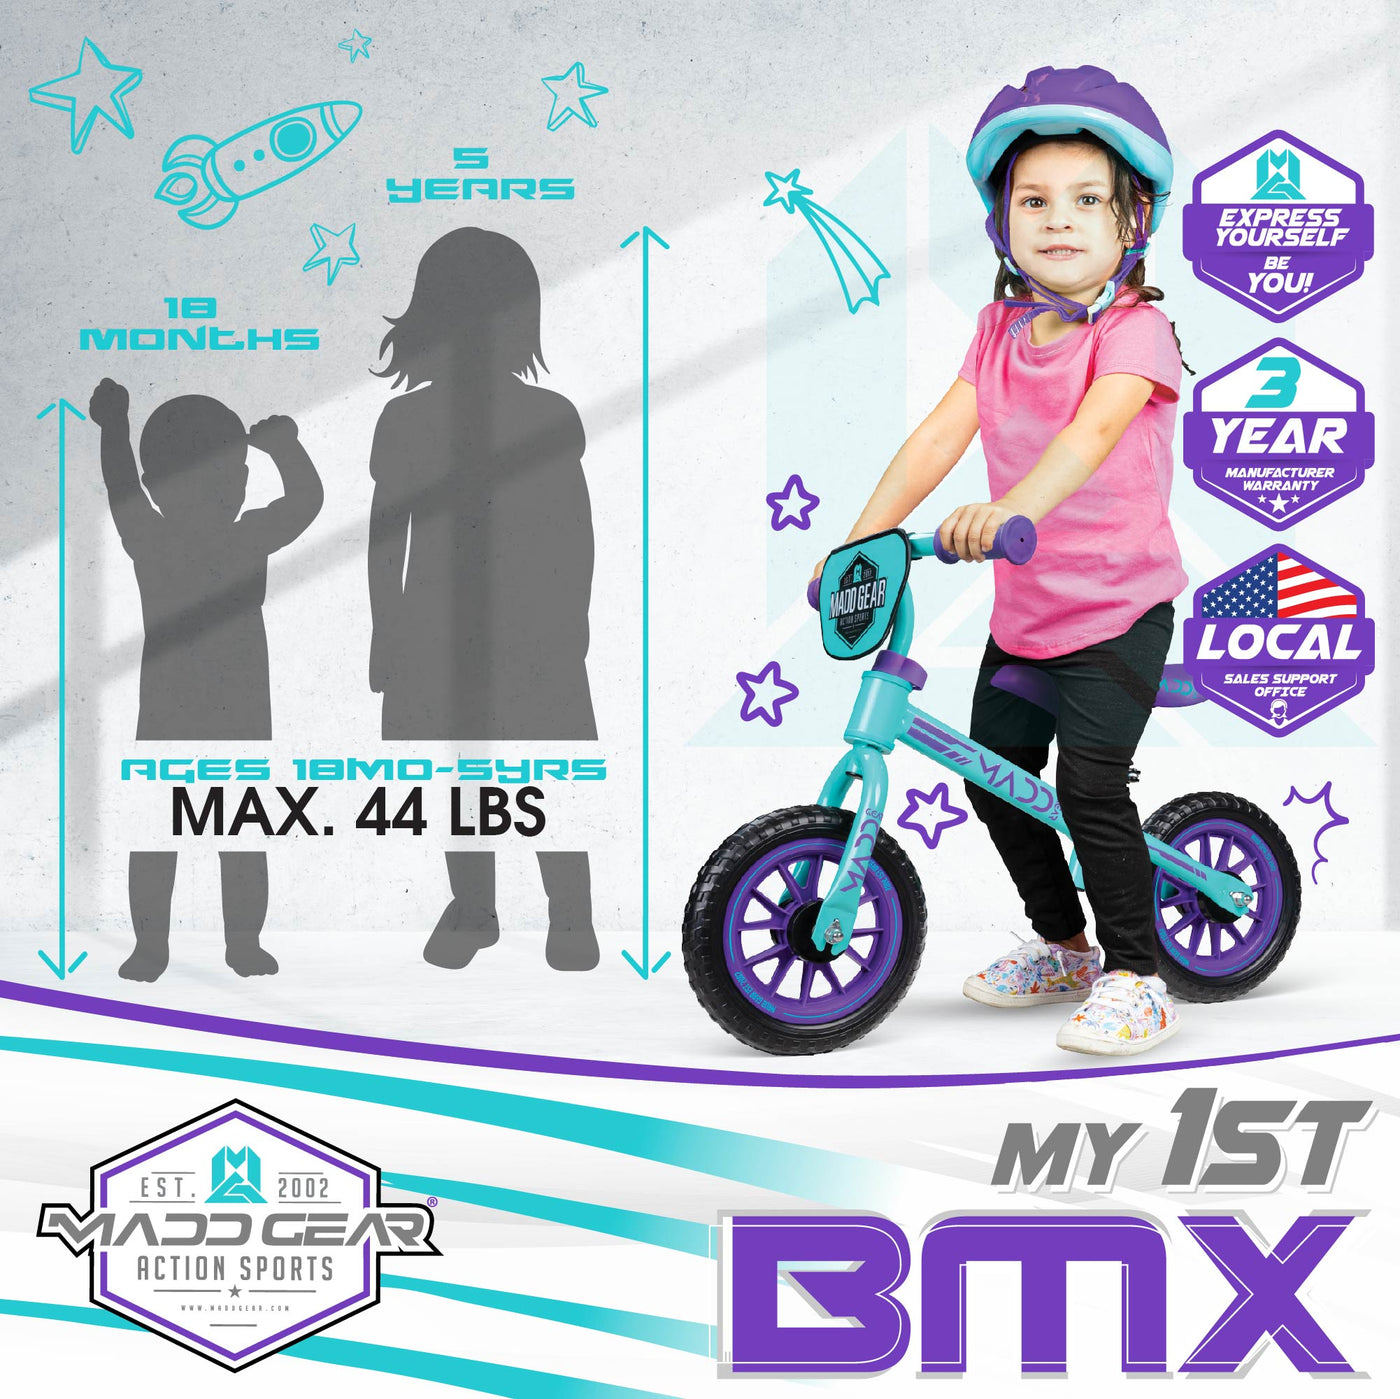 MGP Madd Gear Balance Bike My 1st BMX Trainer Strider Running Teal Purple Children